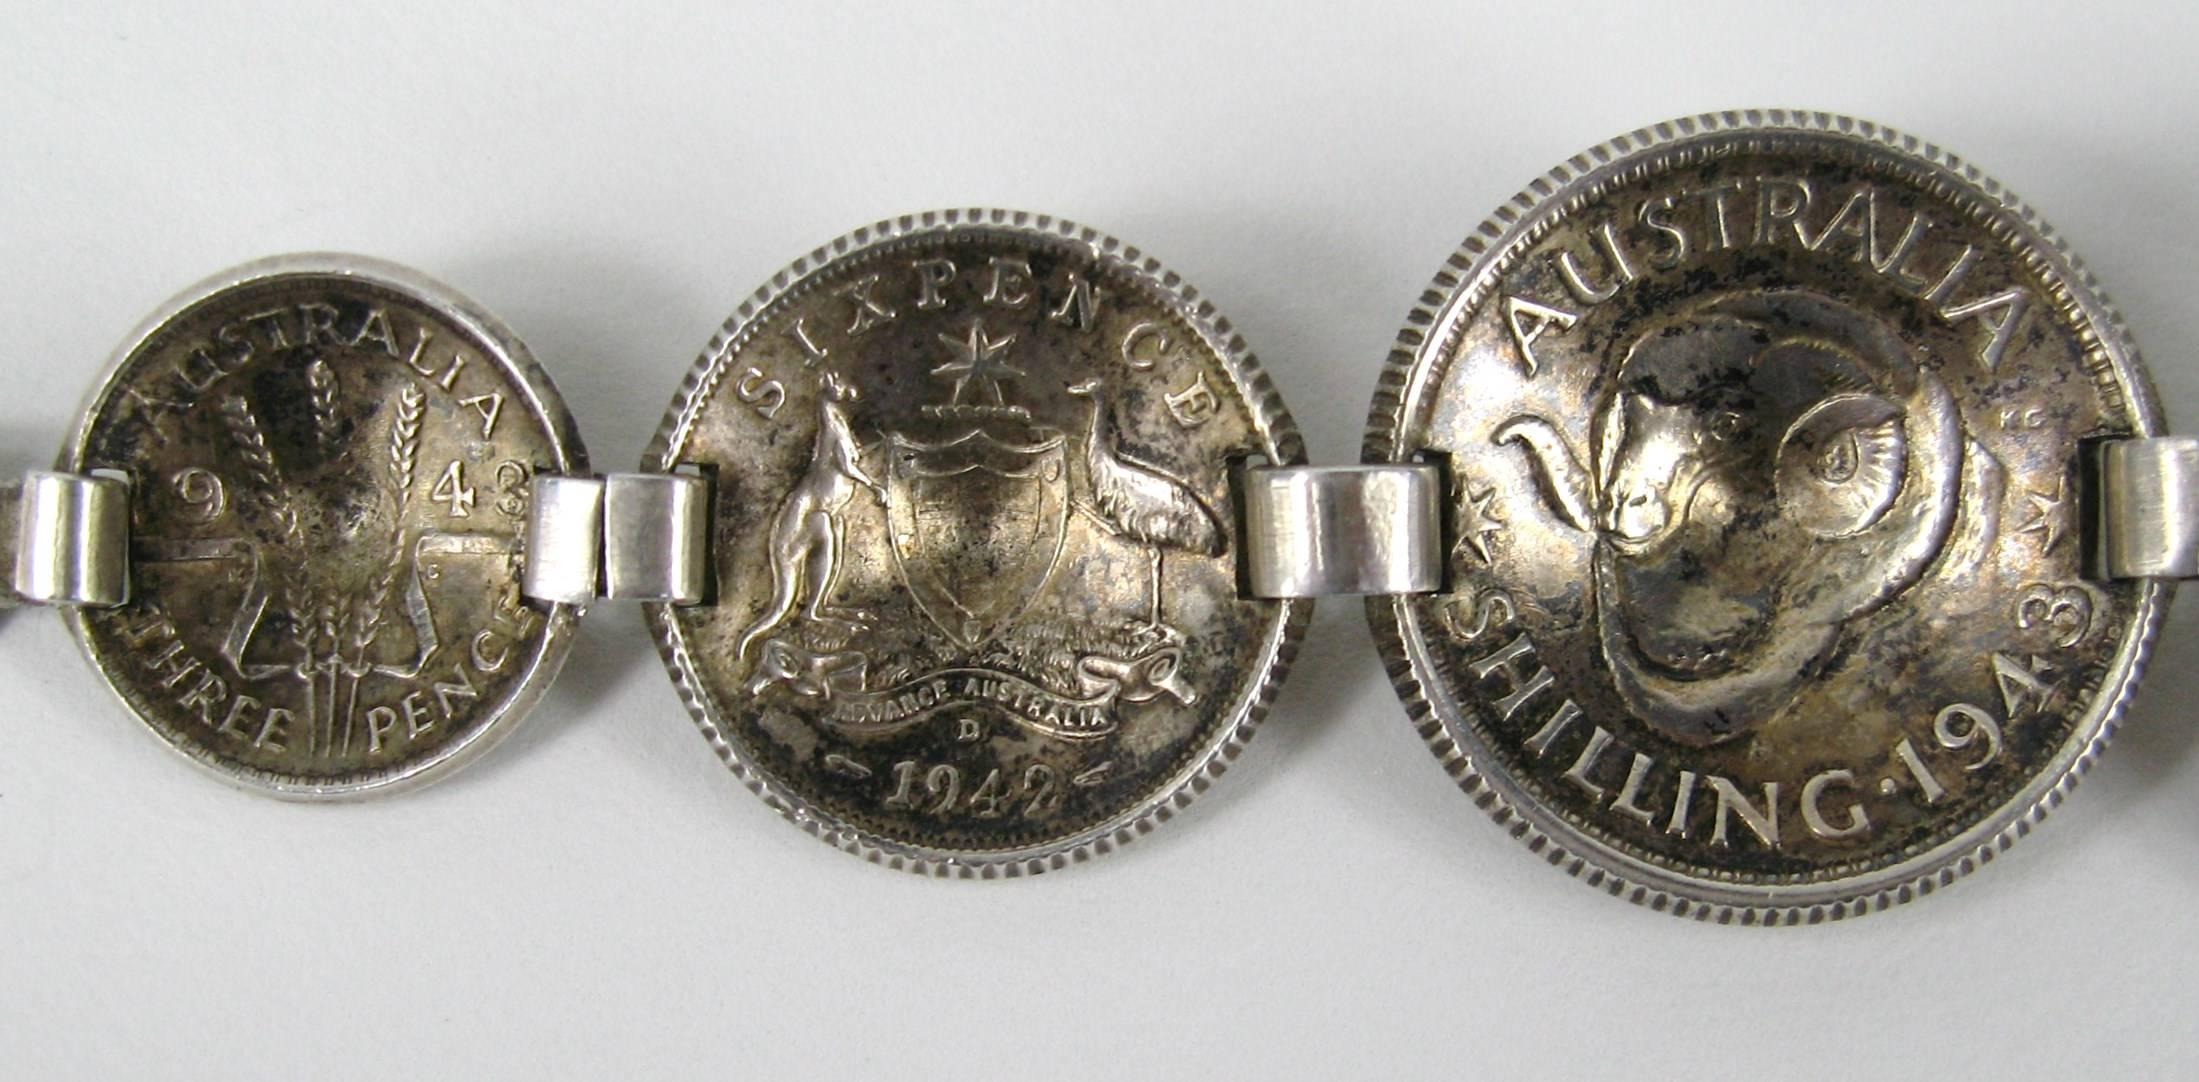  Sterling silver Bracelet Coin 1943 Australian shilling  For Sale 1